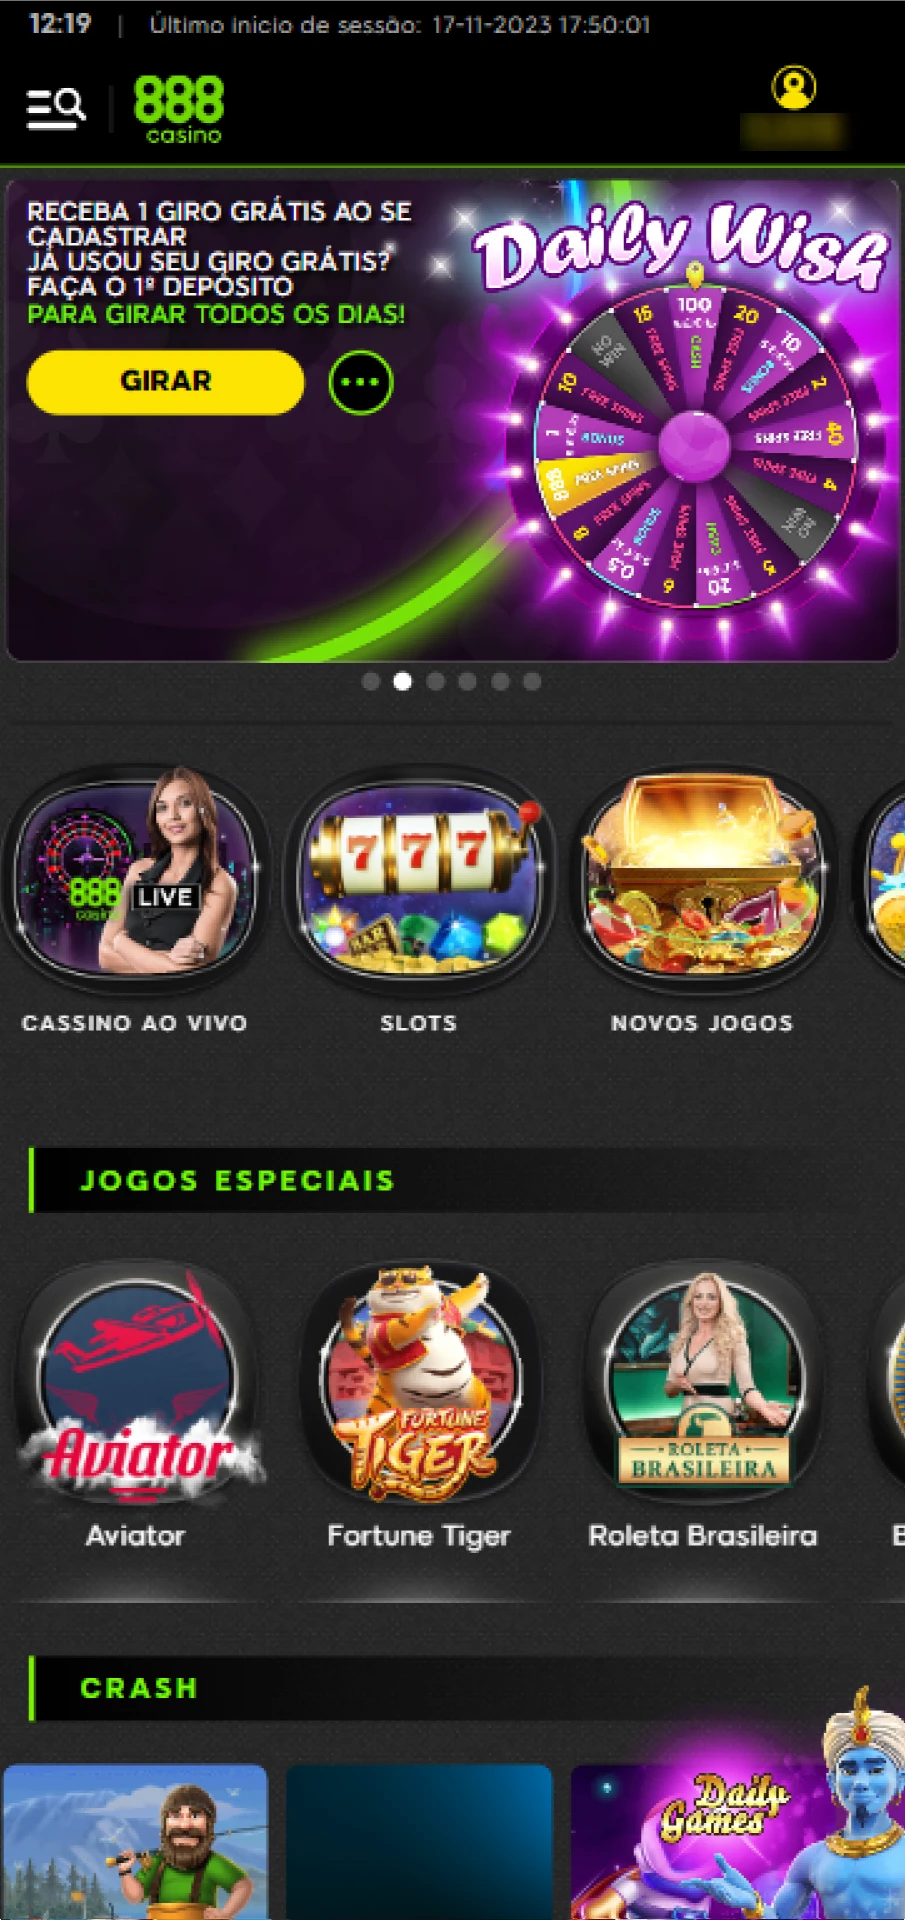 Execute o aplicativo e faça login no 888 casino.